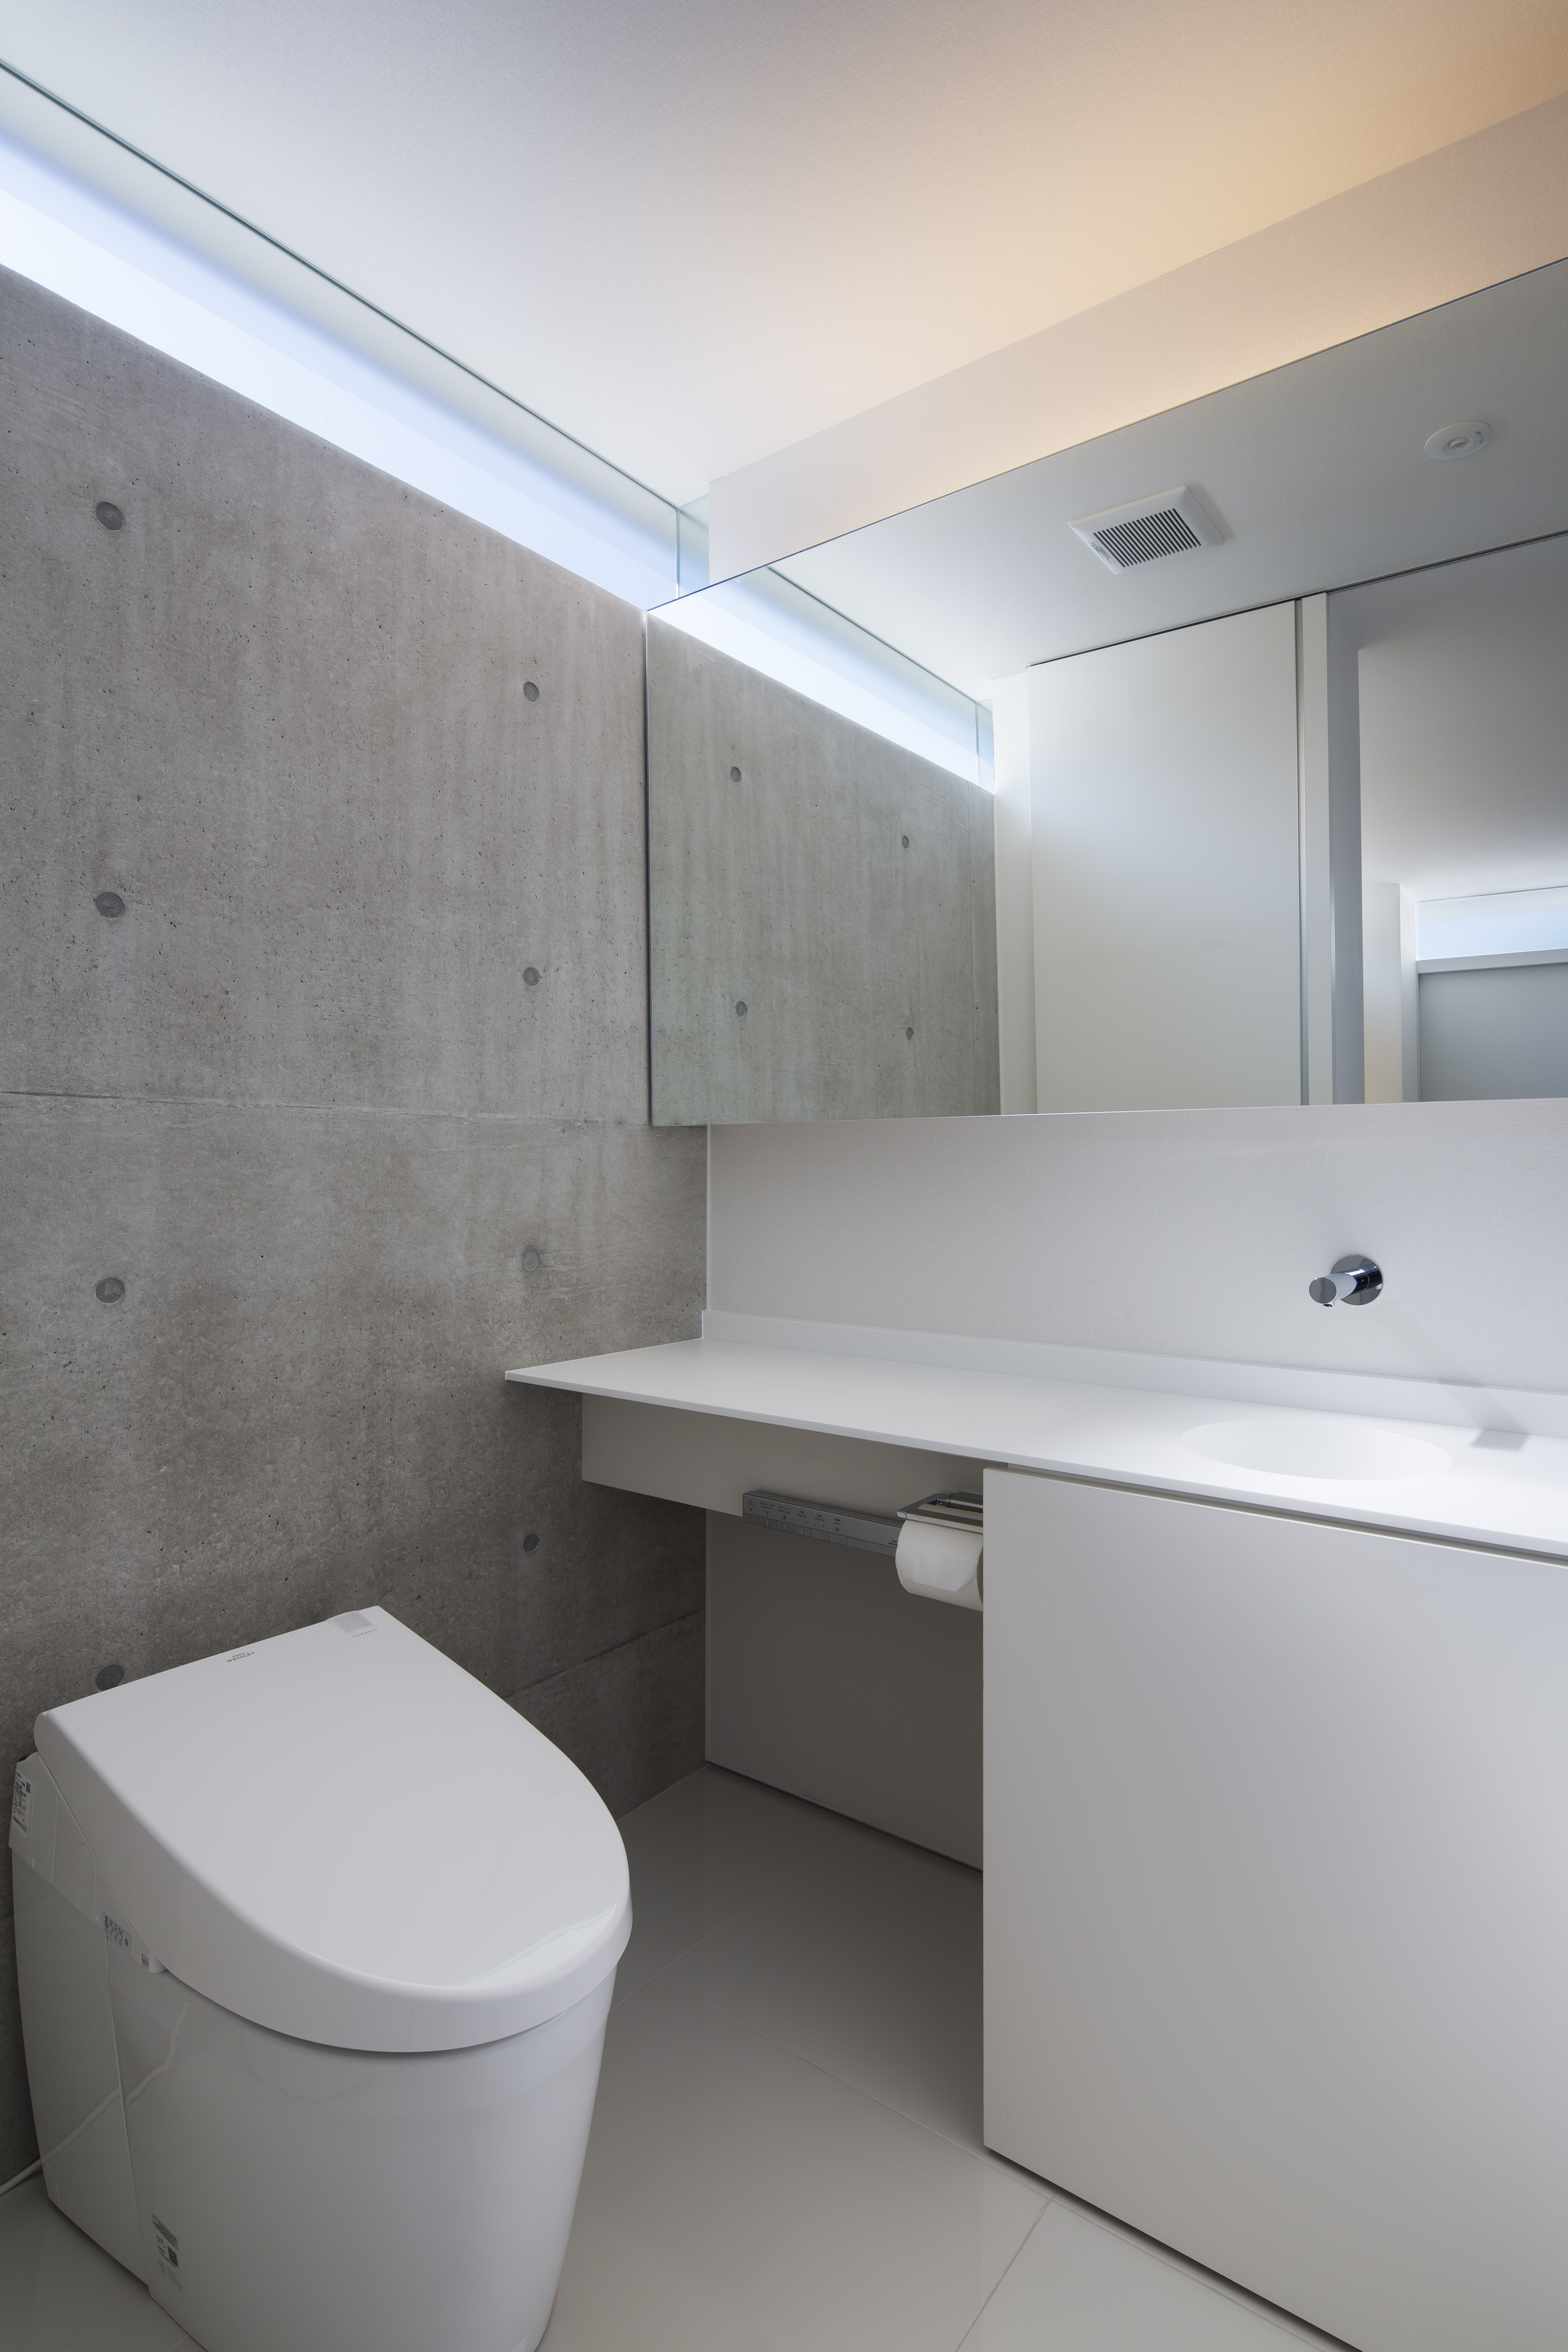 コンクリート打ちっぱなし壁上の高窓から優しい光が入るトイレ